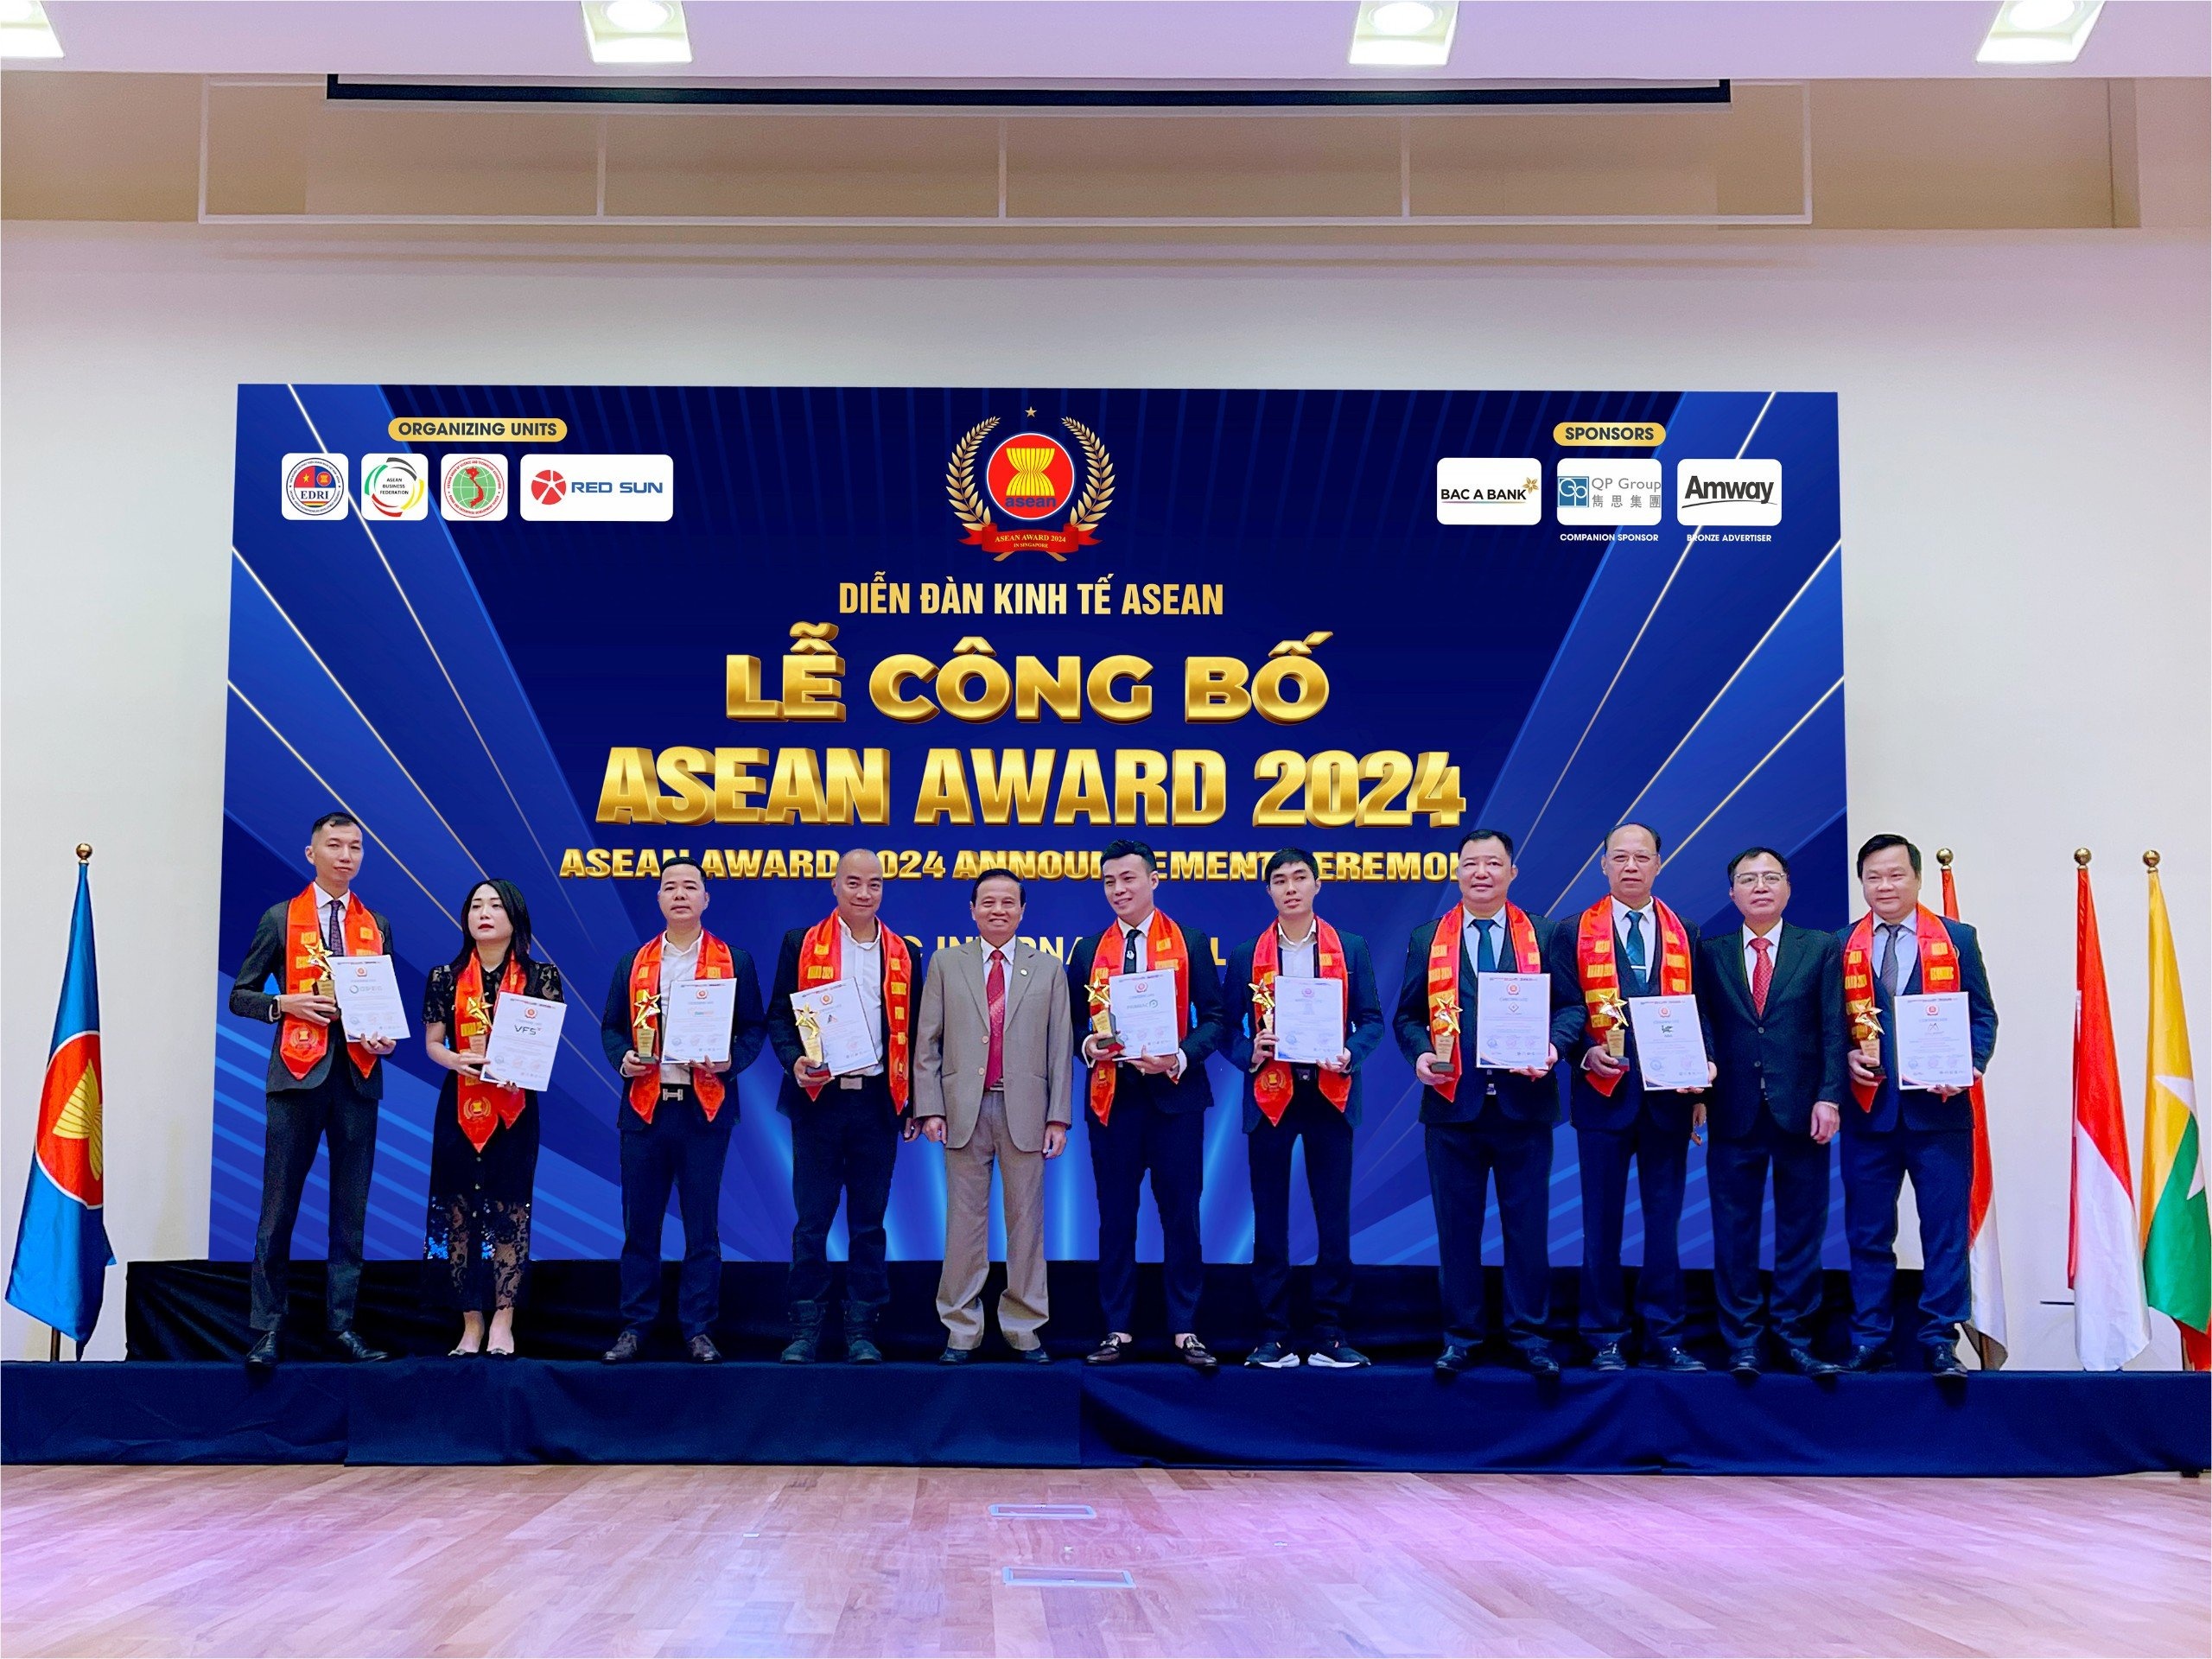 VFS là công ty chứng khoán đầu tiên nhận giải Asean Award 2024